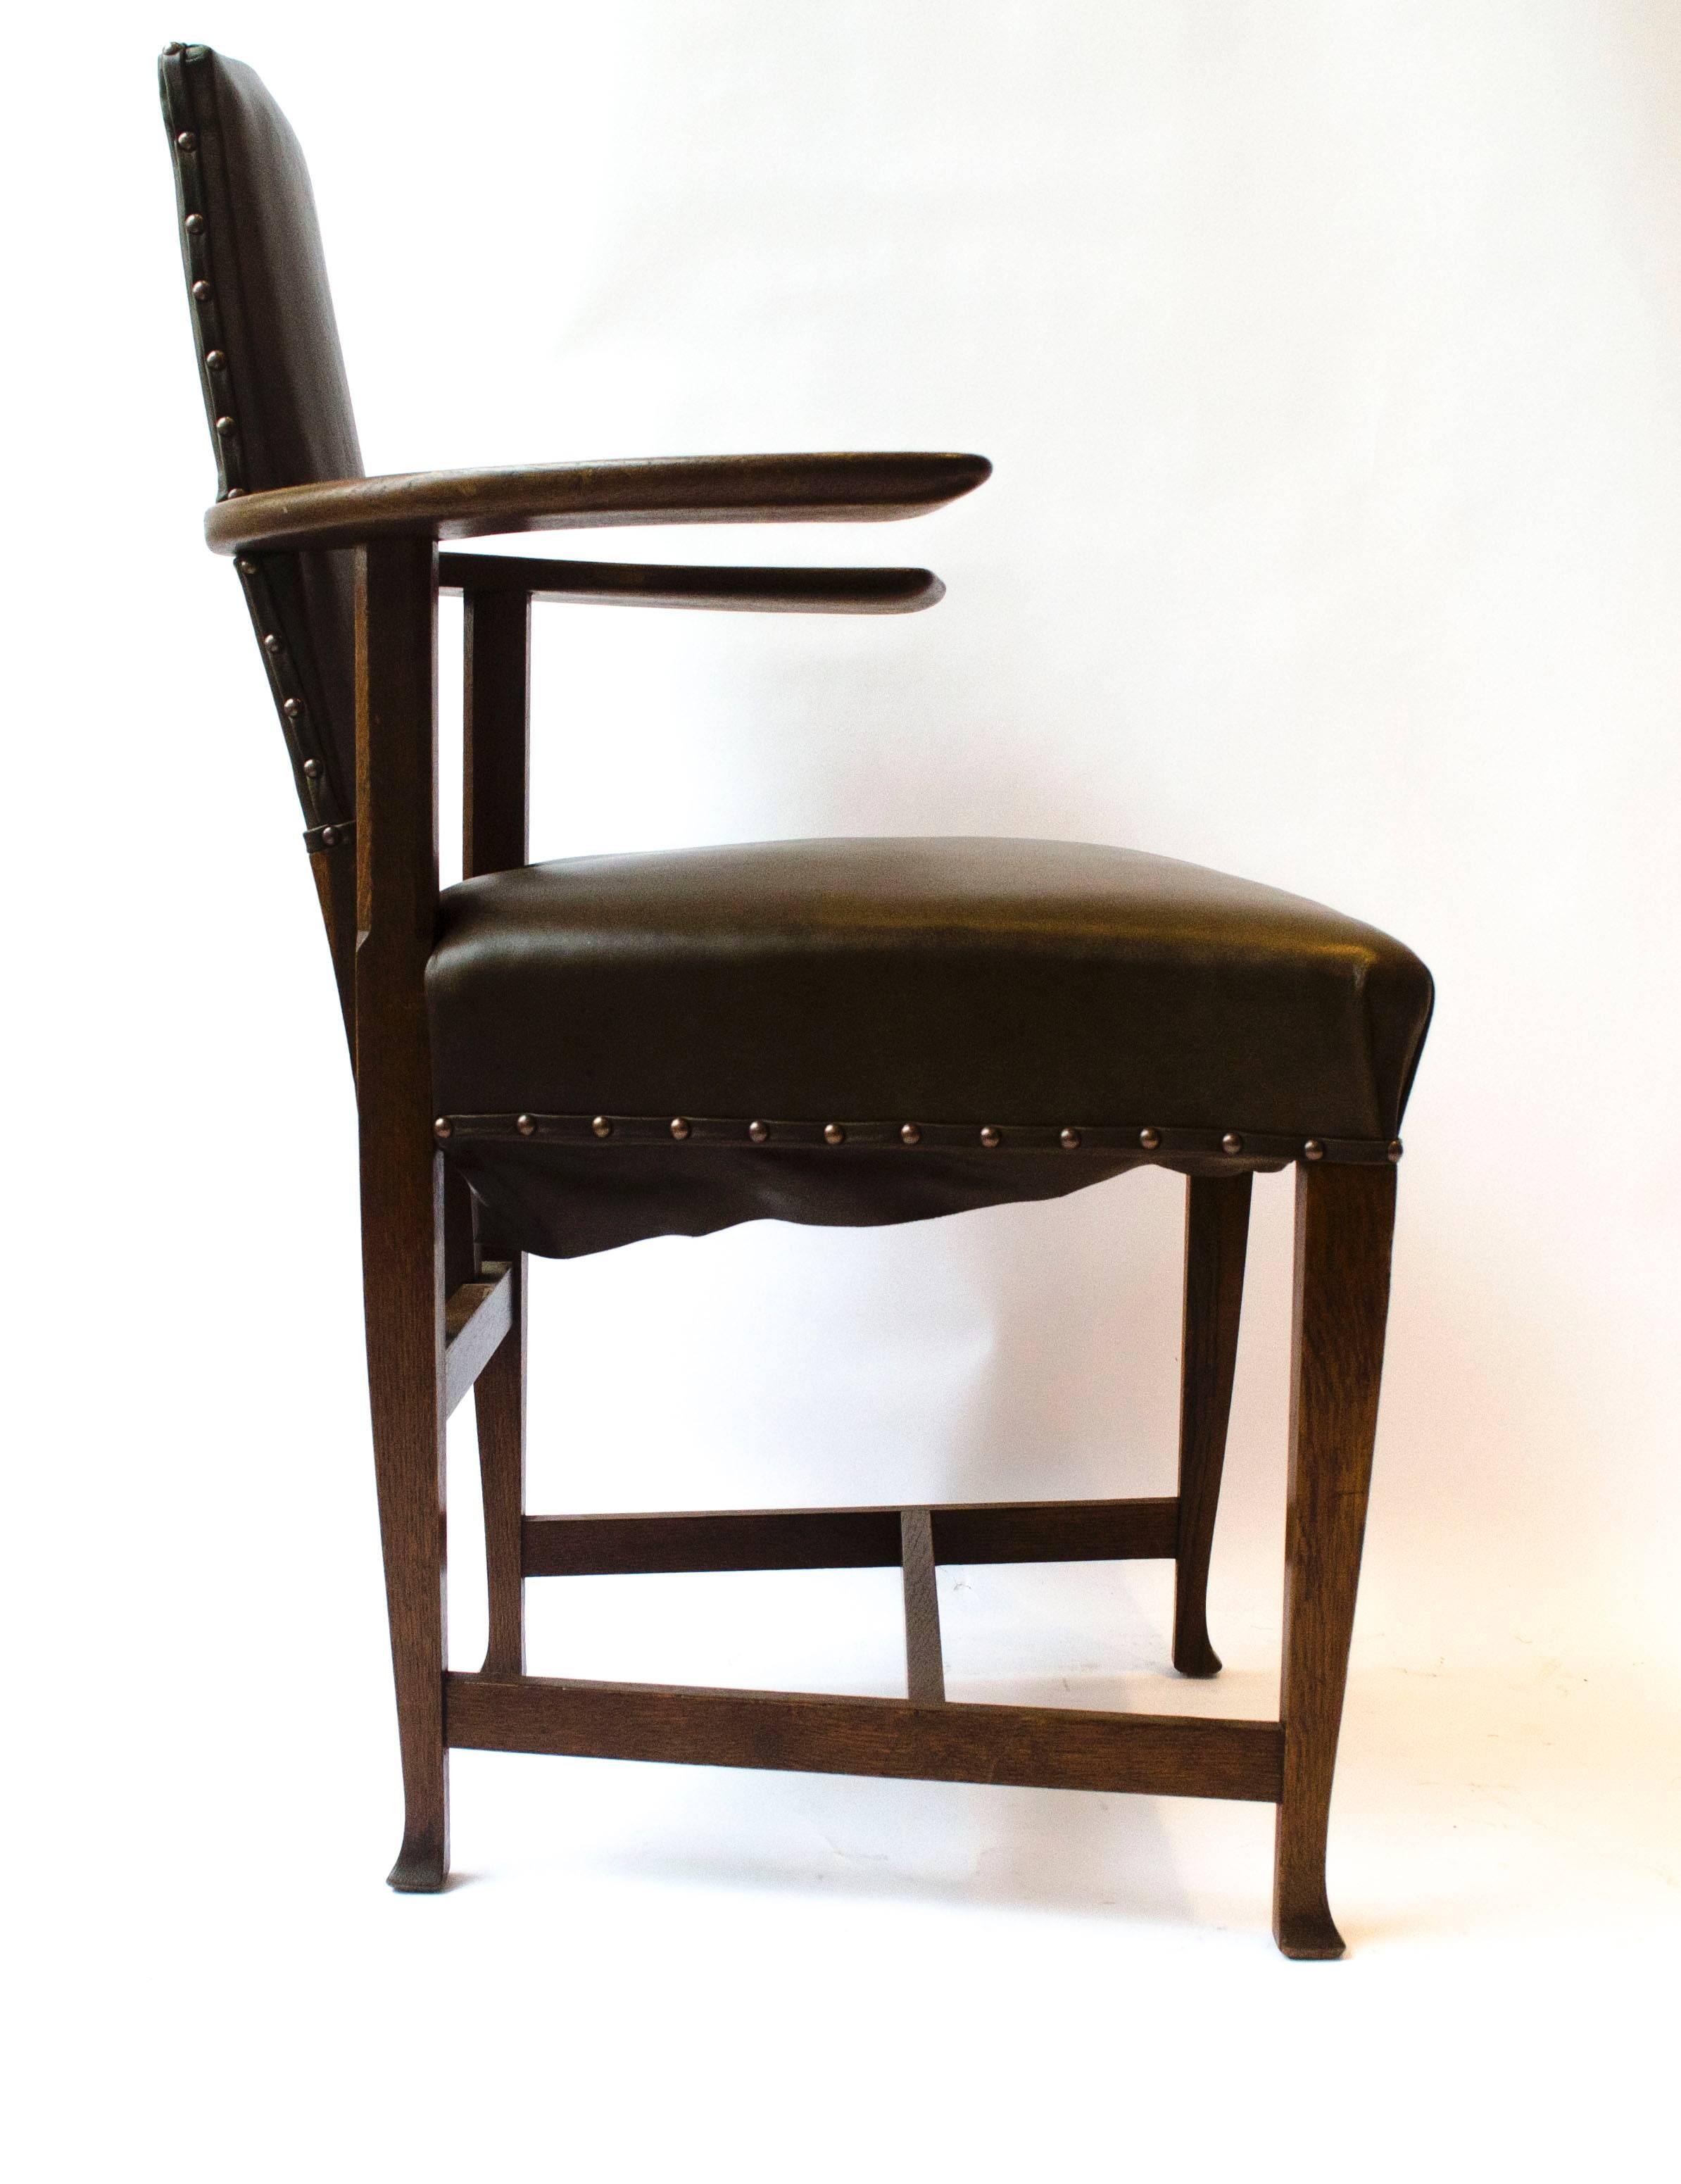  George Walton. Ein seltener Arts & Crafts Glasgow School Eiche 'Abingdon' Sessel. 
Dieses Design ist ziemlich radikal, mit großen flachen Armen, die herausragen, die Einbeziehung der hinteren Beine und aufrechten unterstützt ziemlich weit hinten